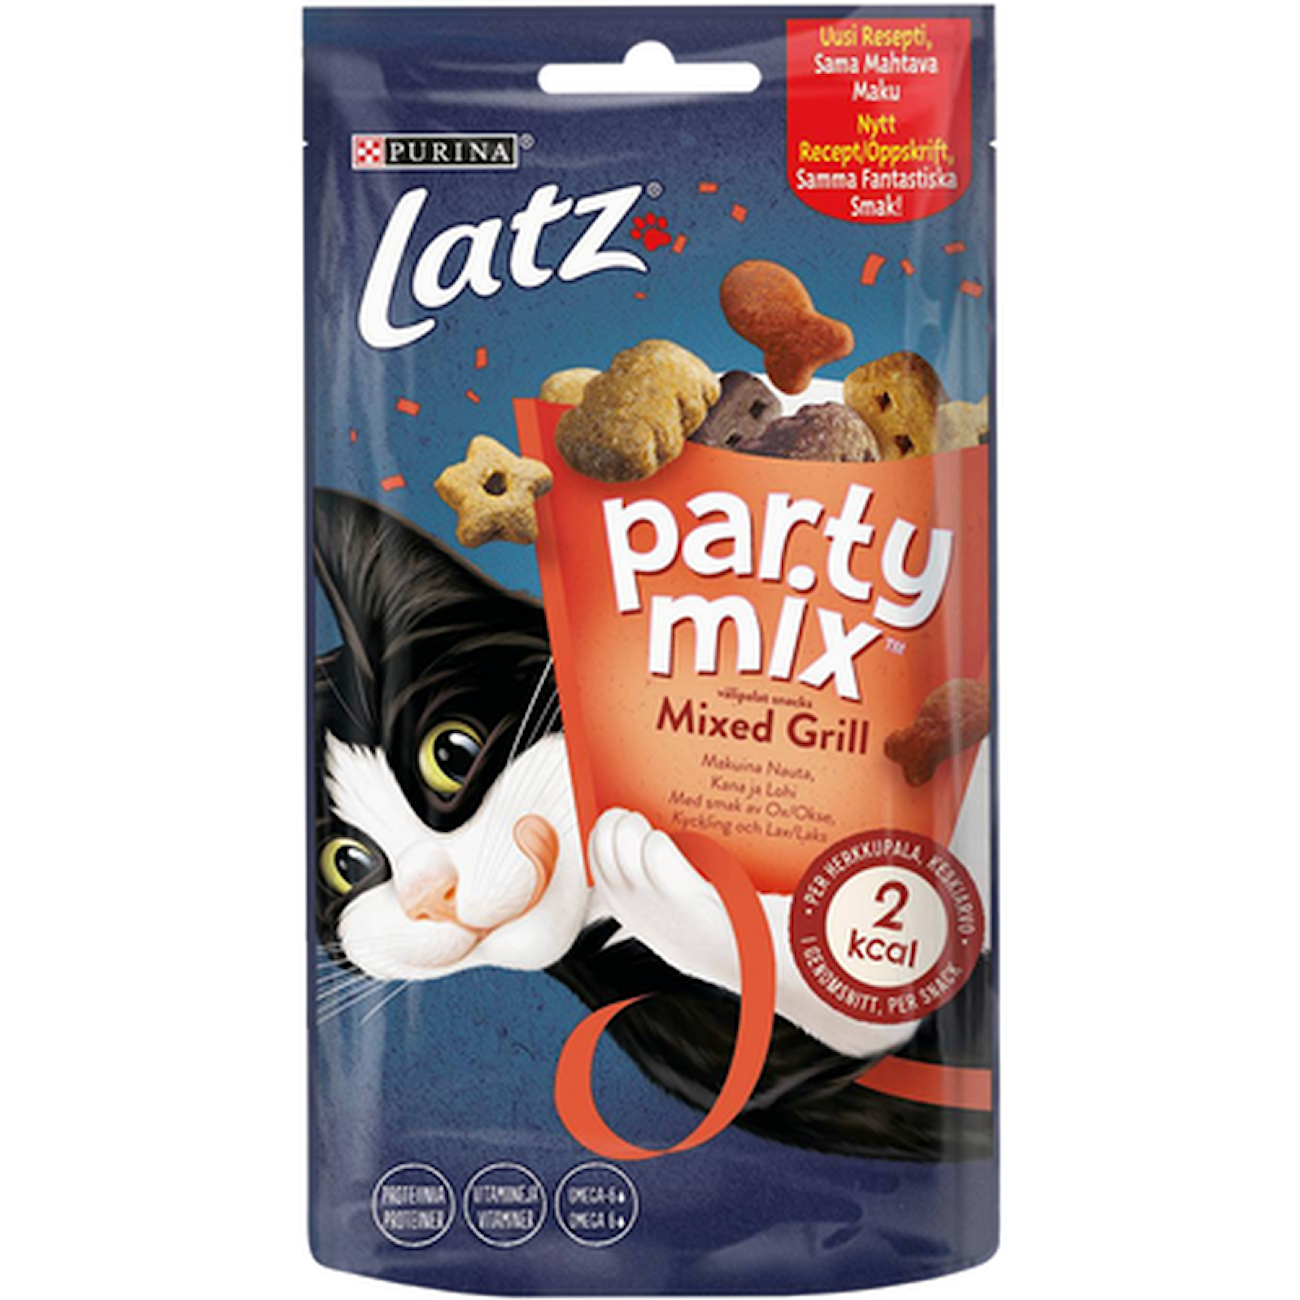 Latz Party Mix Mixed Grill